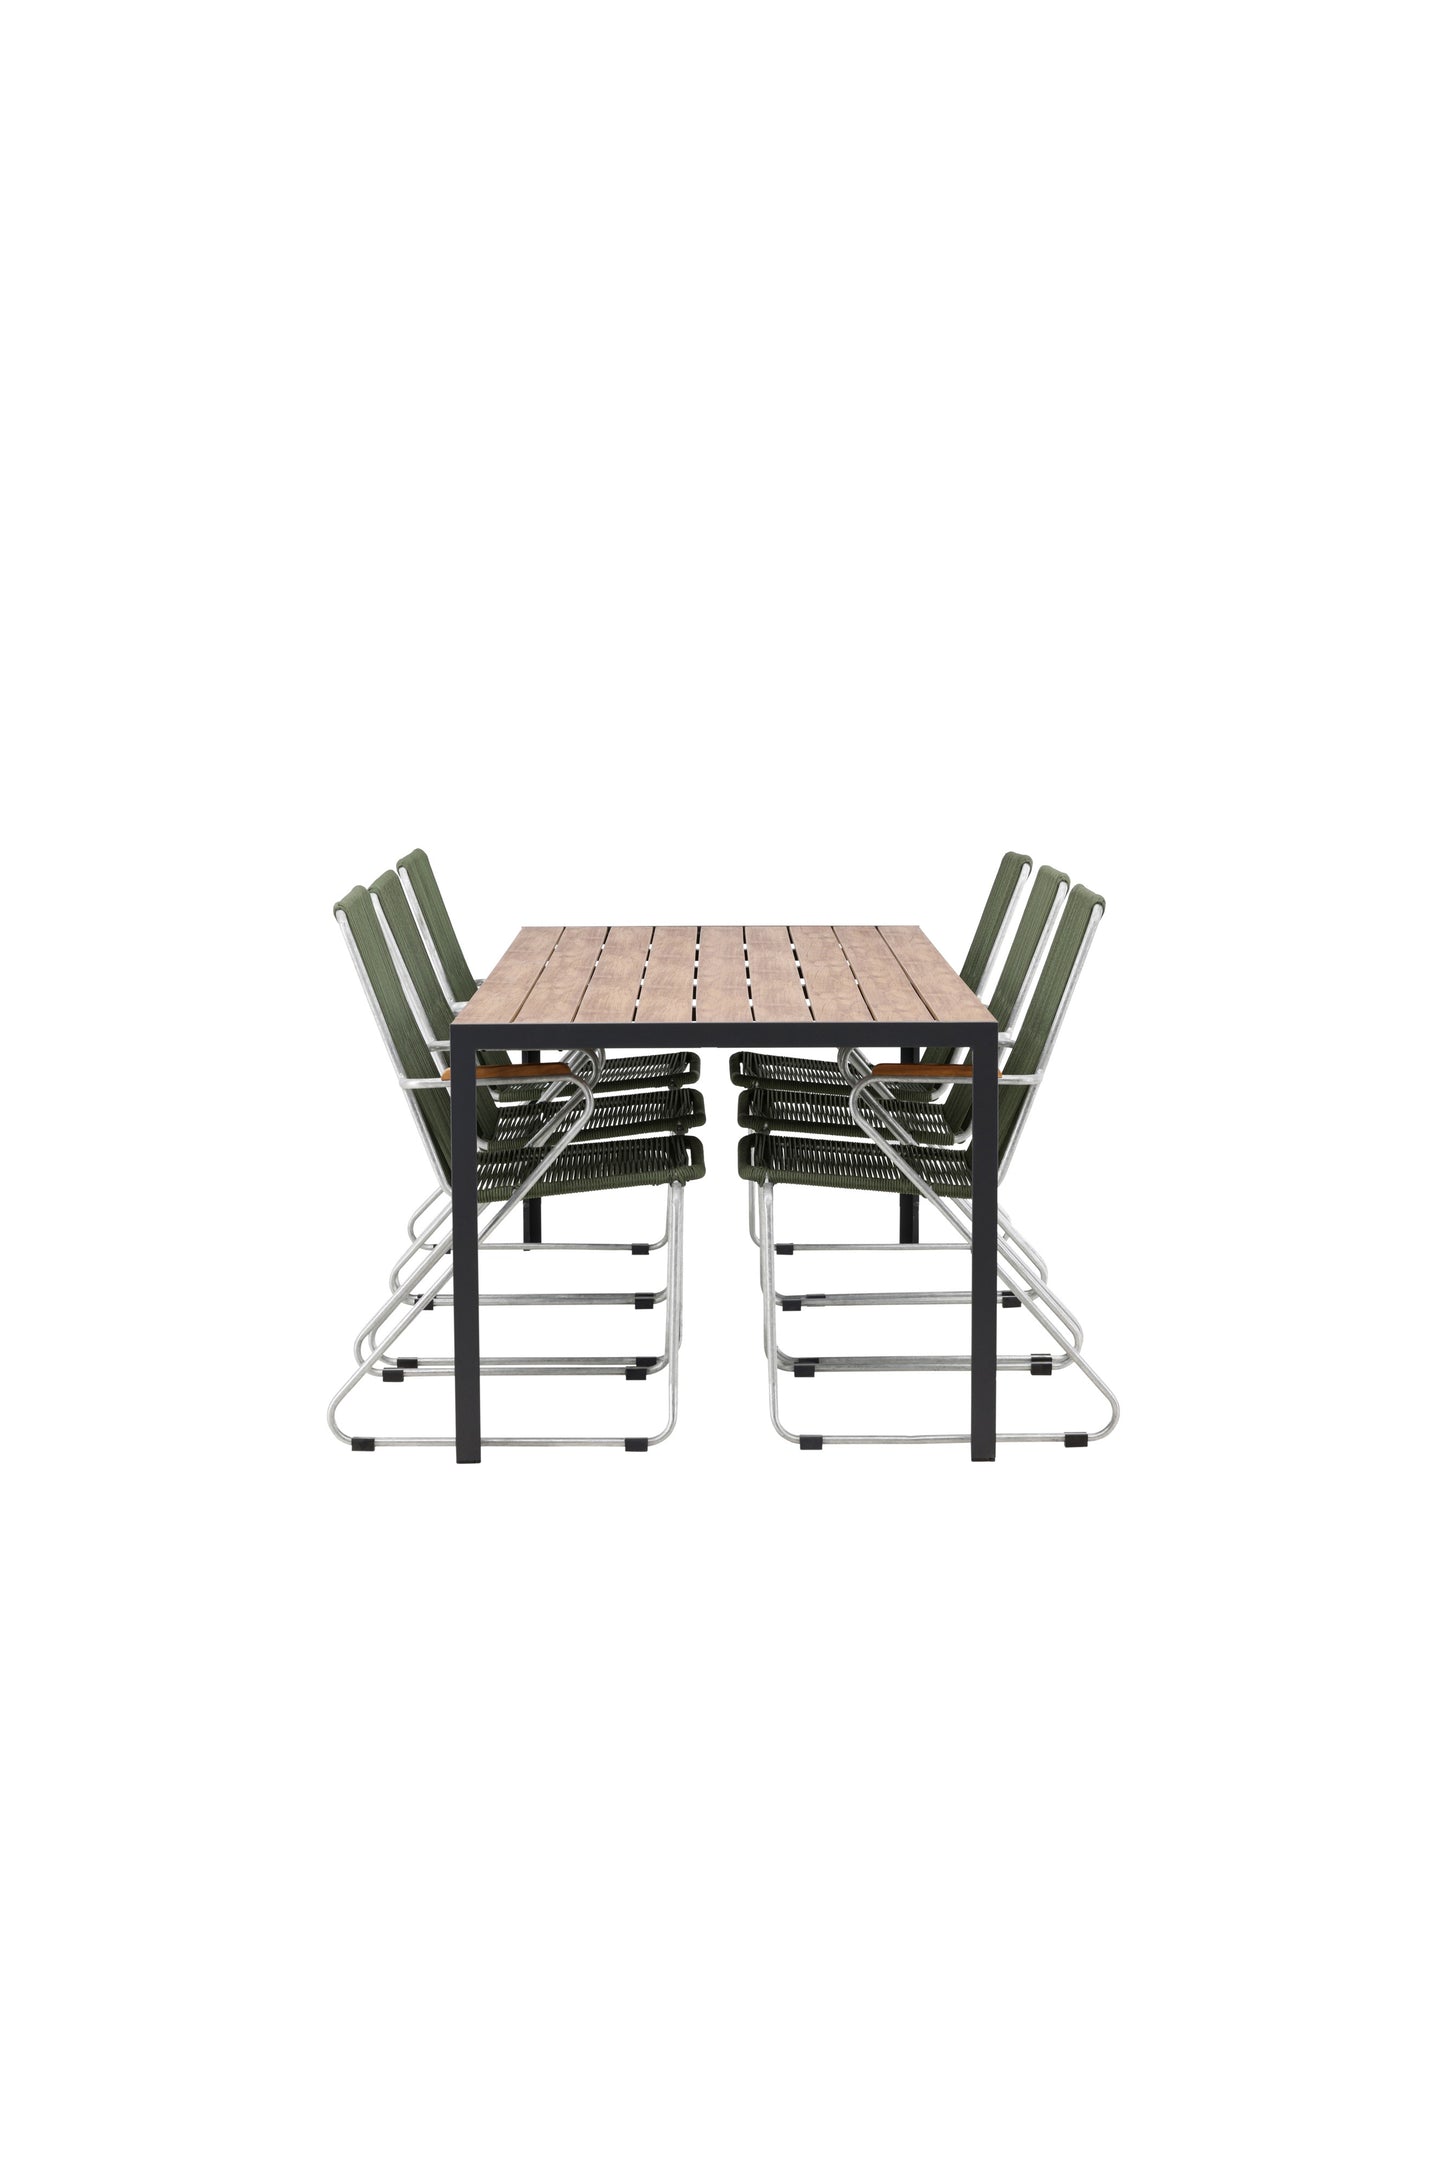 Break - Spisebord, Aluminium - Sort / Natur Rektangulær 90*200* + Bois stol Stål - Sølv / Grøn Reb